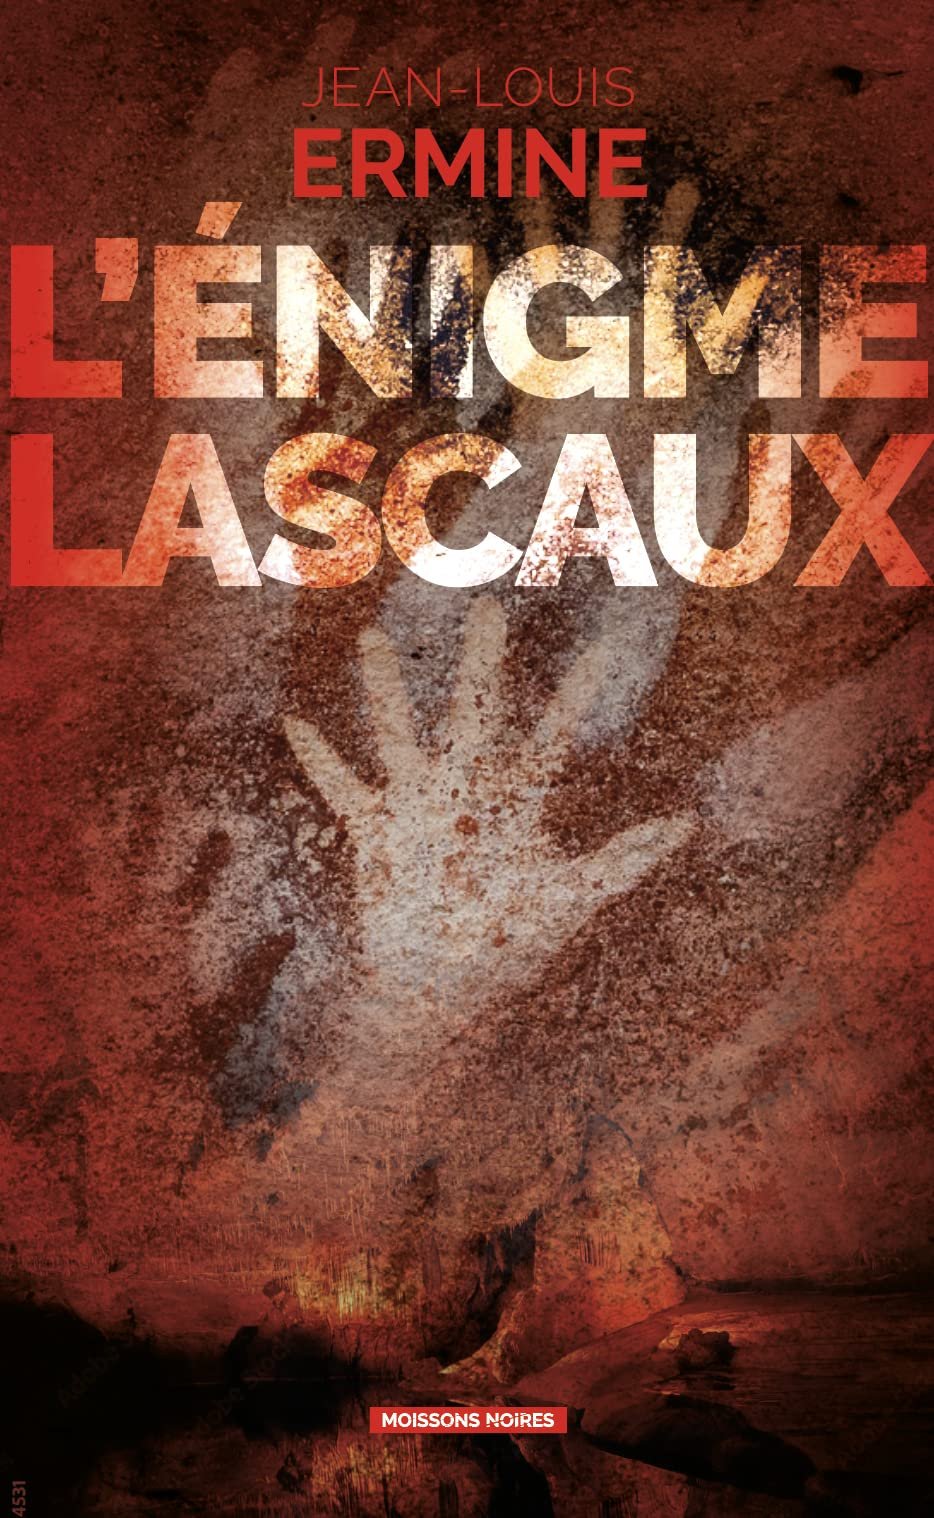 Jean-Louis Ermine – L'énigme Lascaux